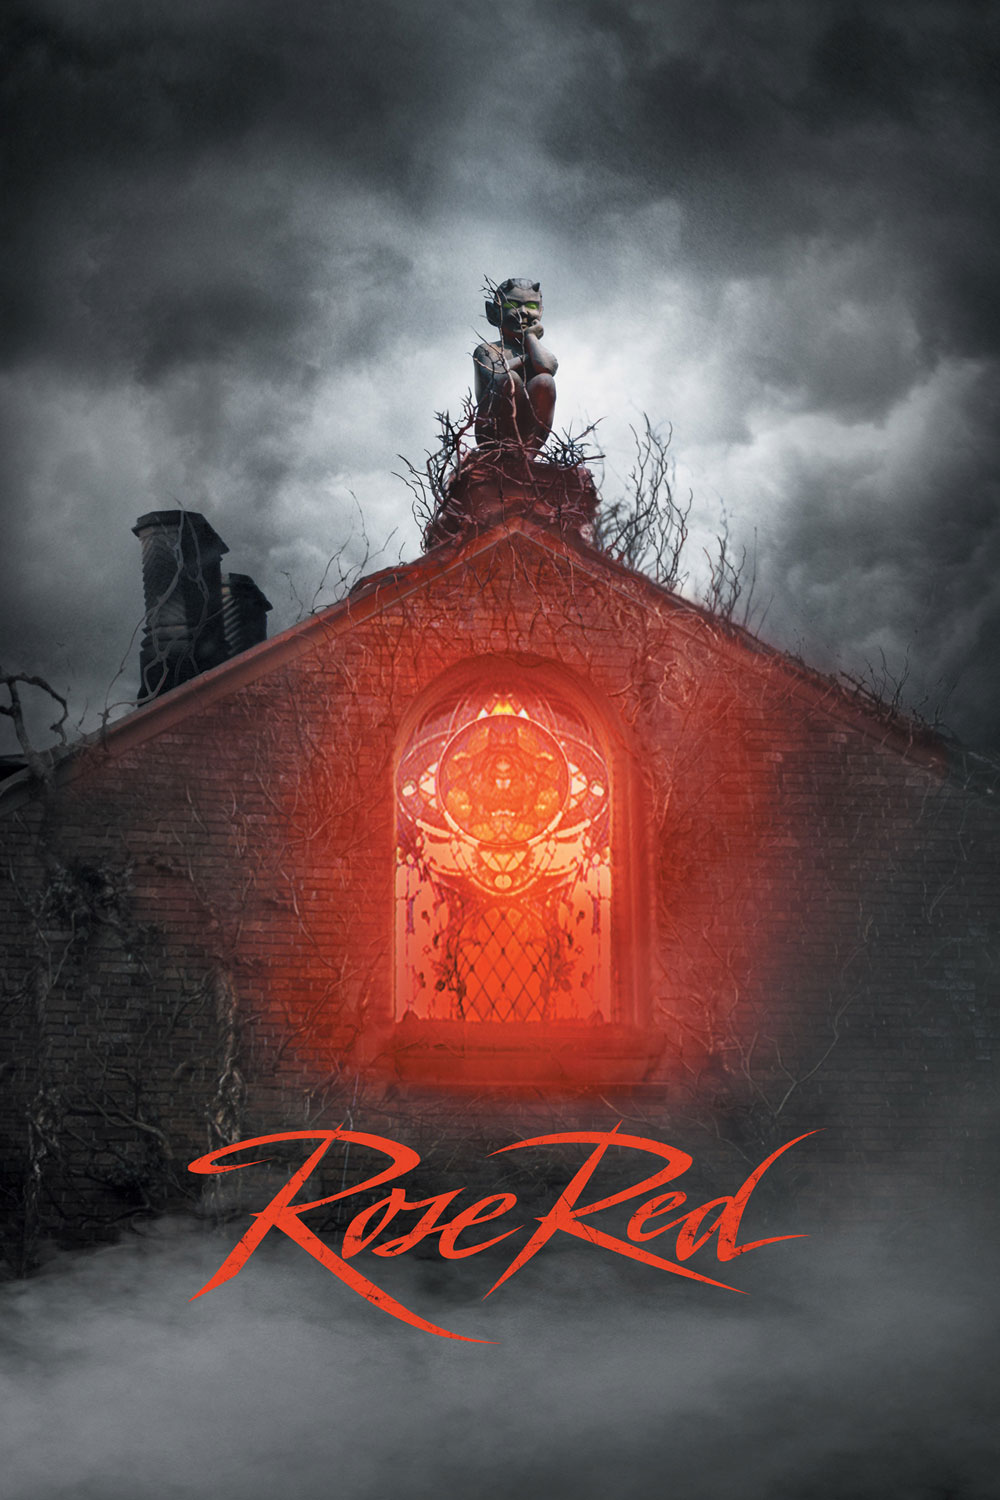 Особняк "Красная роза" / Stephen King's Rose Red (2002)